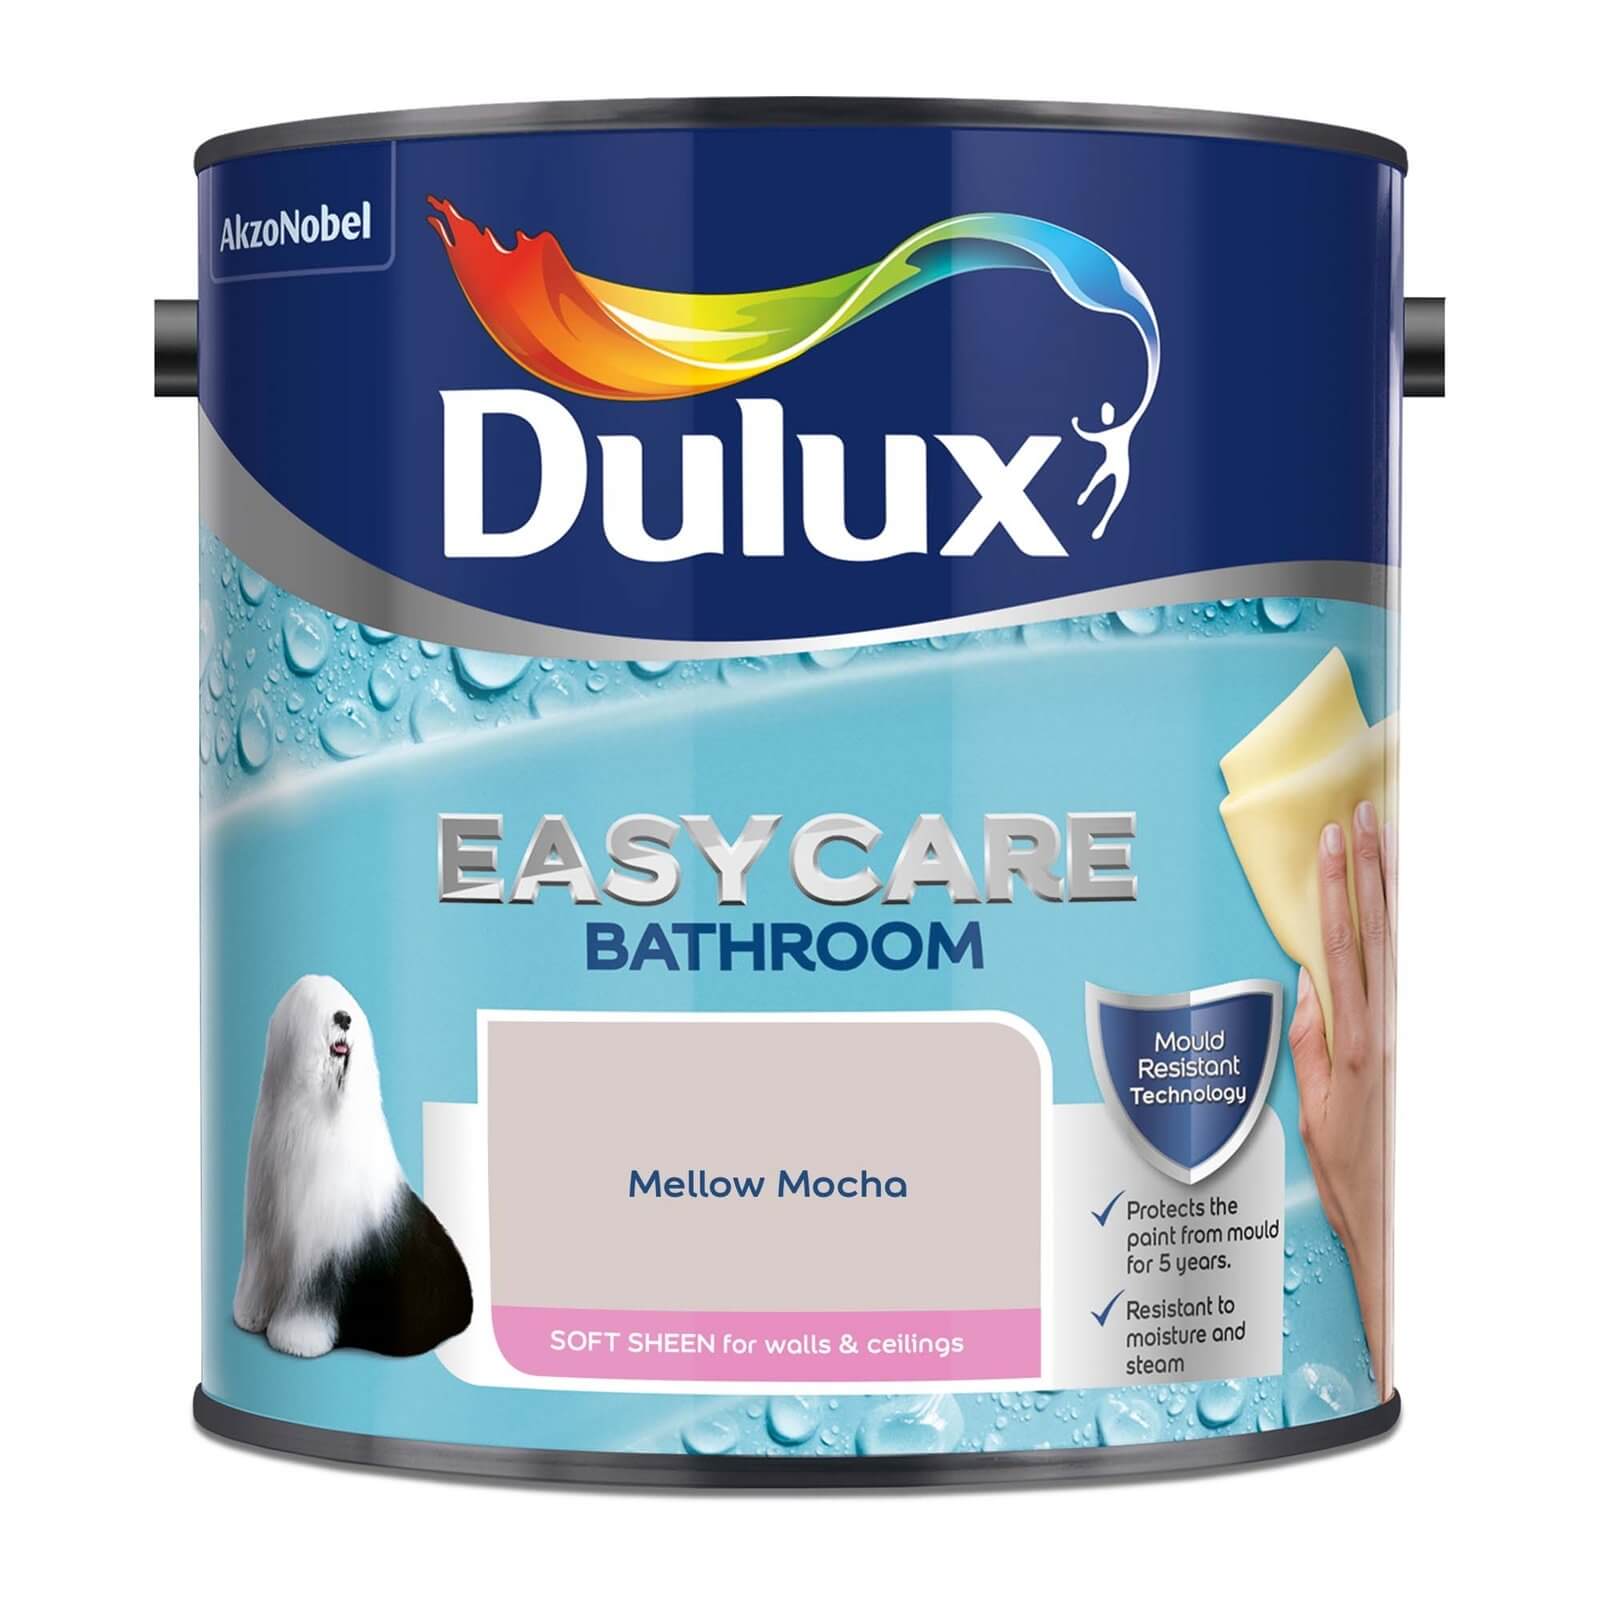 Dulux Easycare Bathroom Mellow Mocha - Soft Sheen Paint - 2.5L